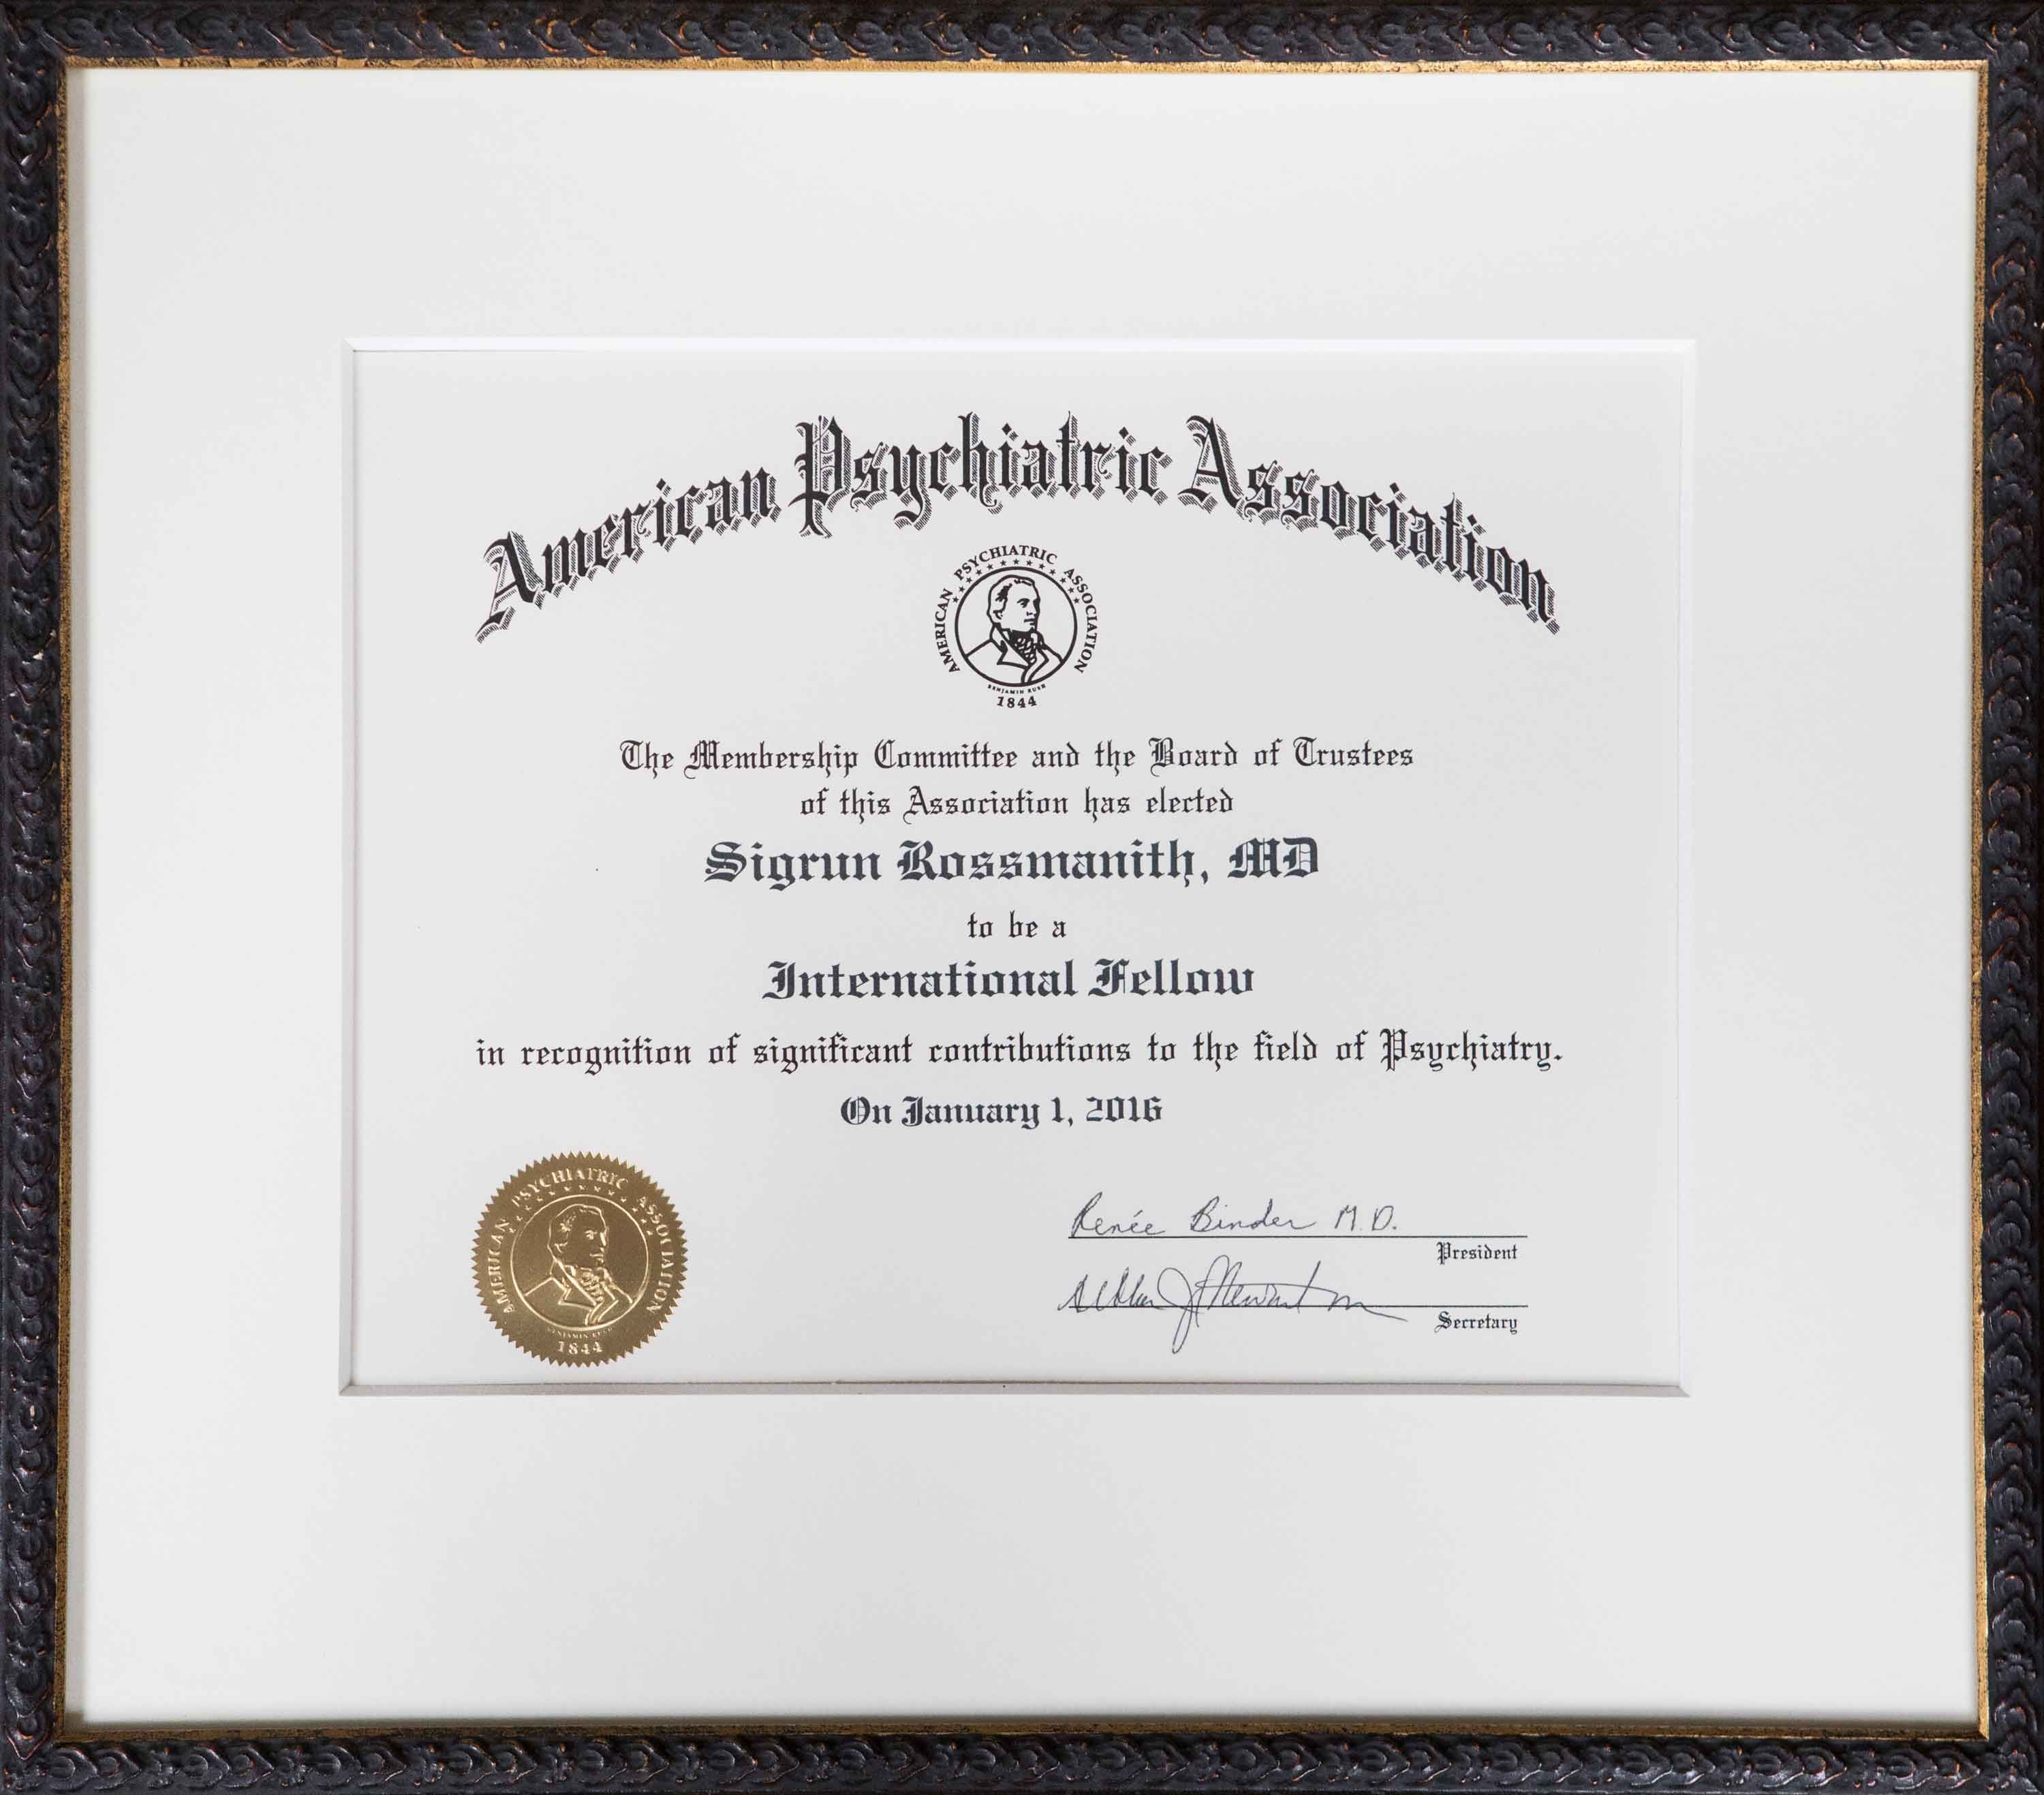 Mitgliedschaftsurkunde der American Psychiatric Association verliehen an Dr. Sigrun Rossmanith